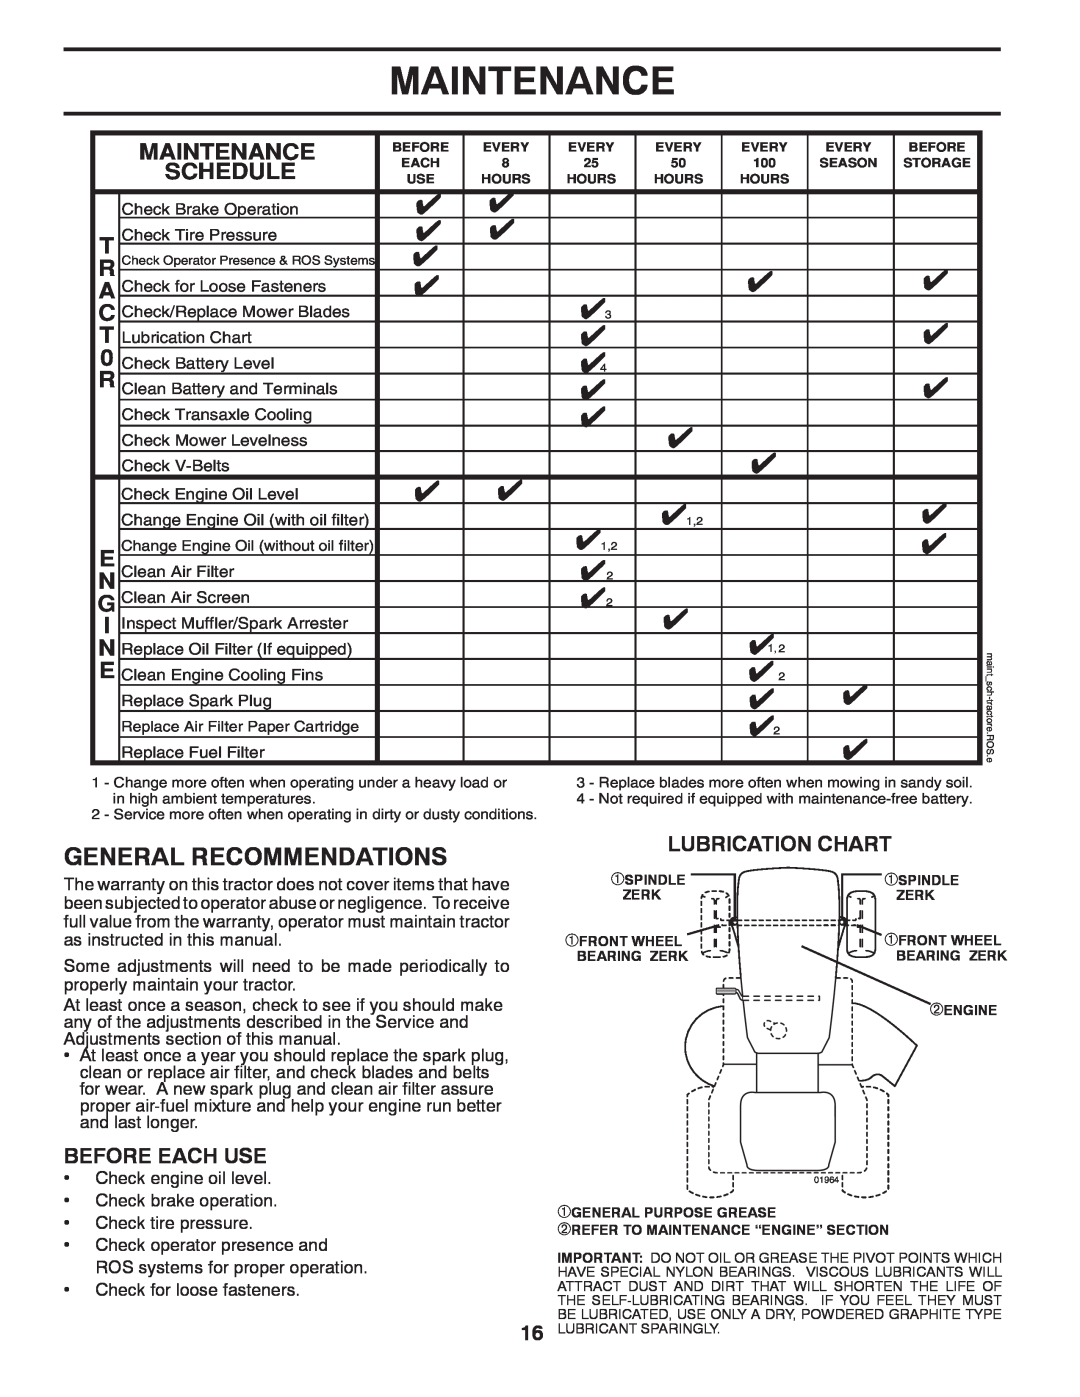 Poulan 532 40 36-87 manual Maintenance, Lubrication Chart 